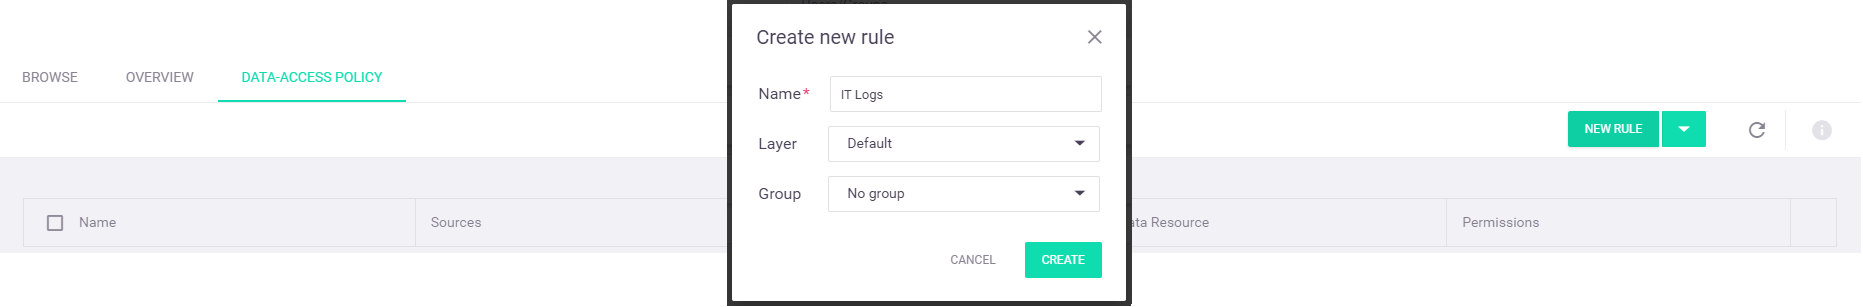 Create new 'IT Logs' rule